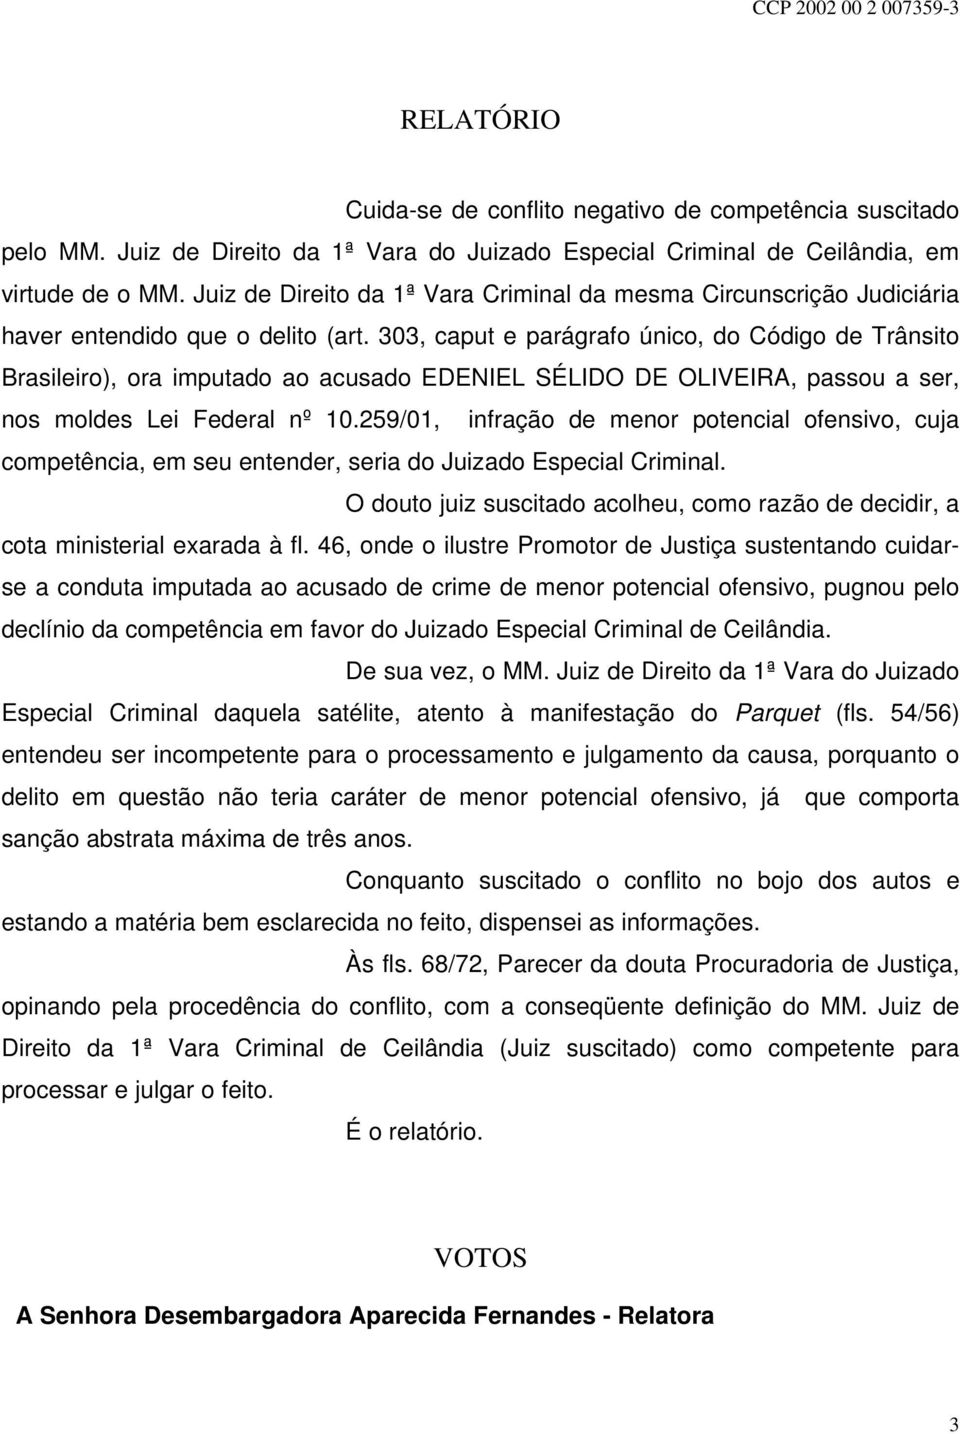 303, caput e parágrafo único, do Código de Trânsito Brasileiro), ora imputado ao acusado EDENIEL SÉLIDO DE OLIVEIRA, passou a ser, nos moldes Lei Federal nº 10.